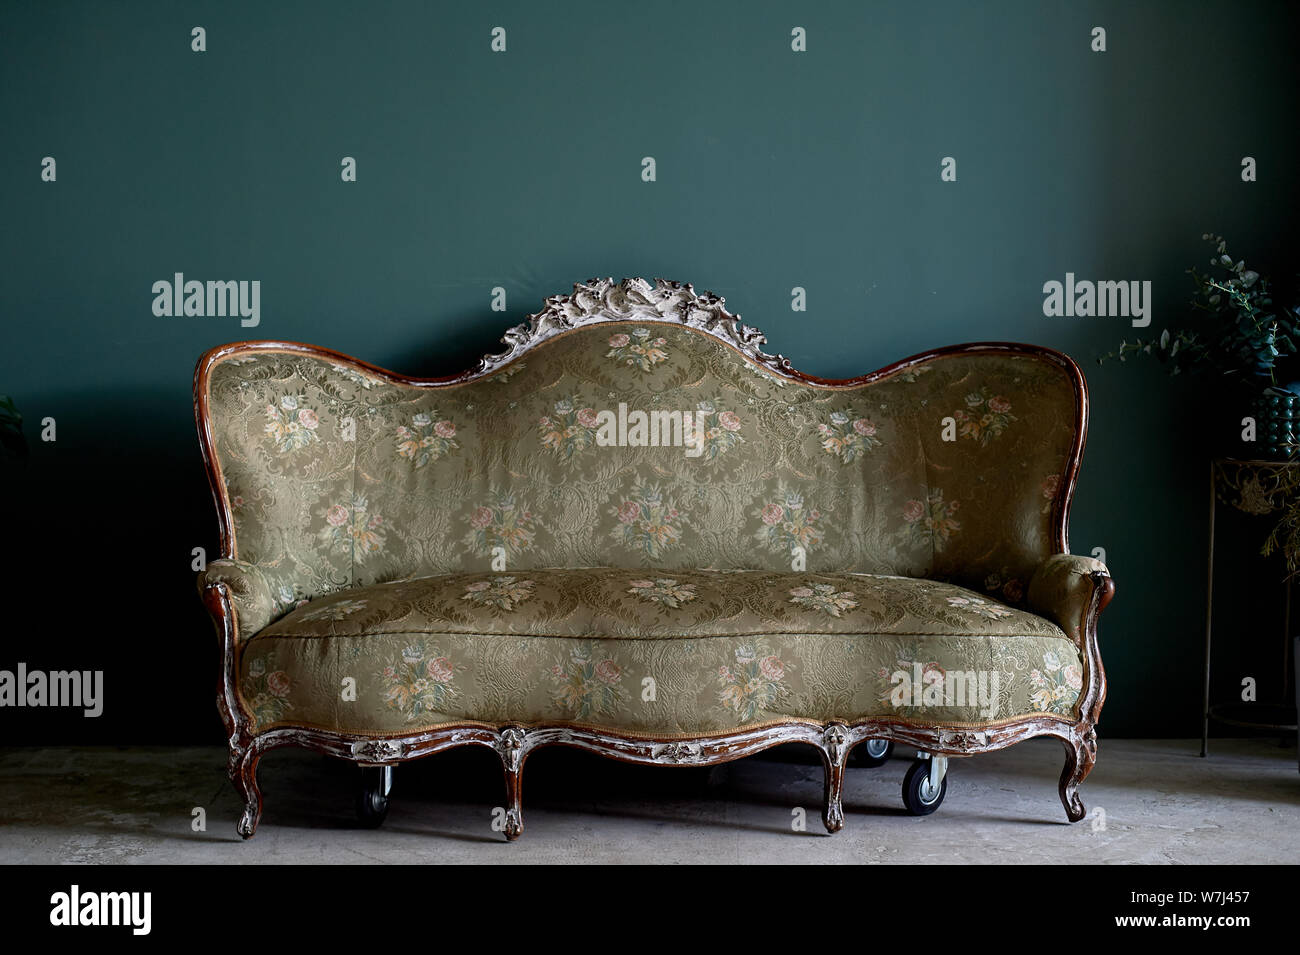 Vecchio divano con un forte legno, tessuto imbottito. Contro la parete verde.retrò interno Foto Stock